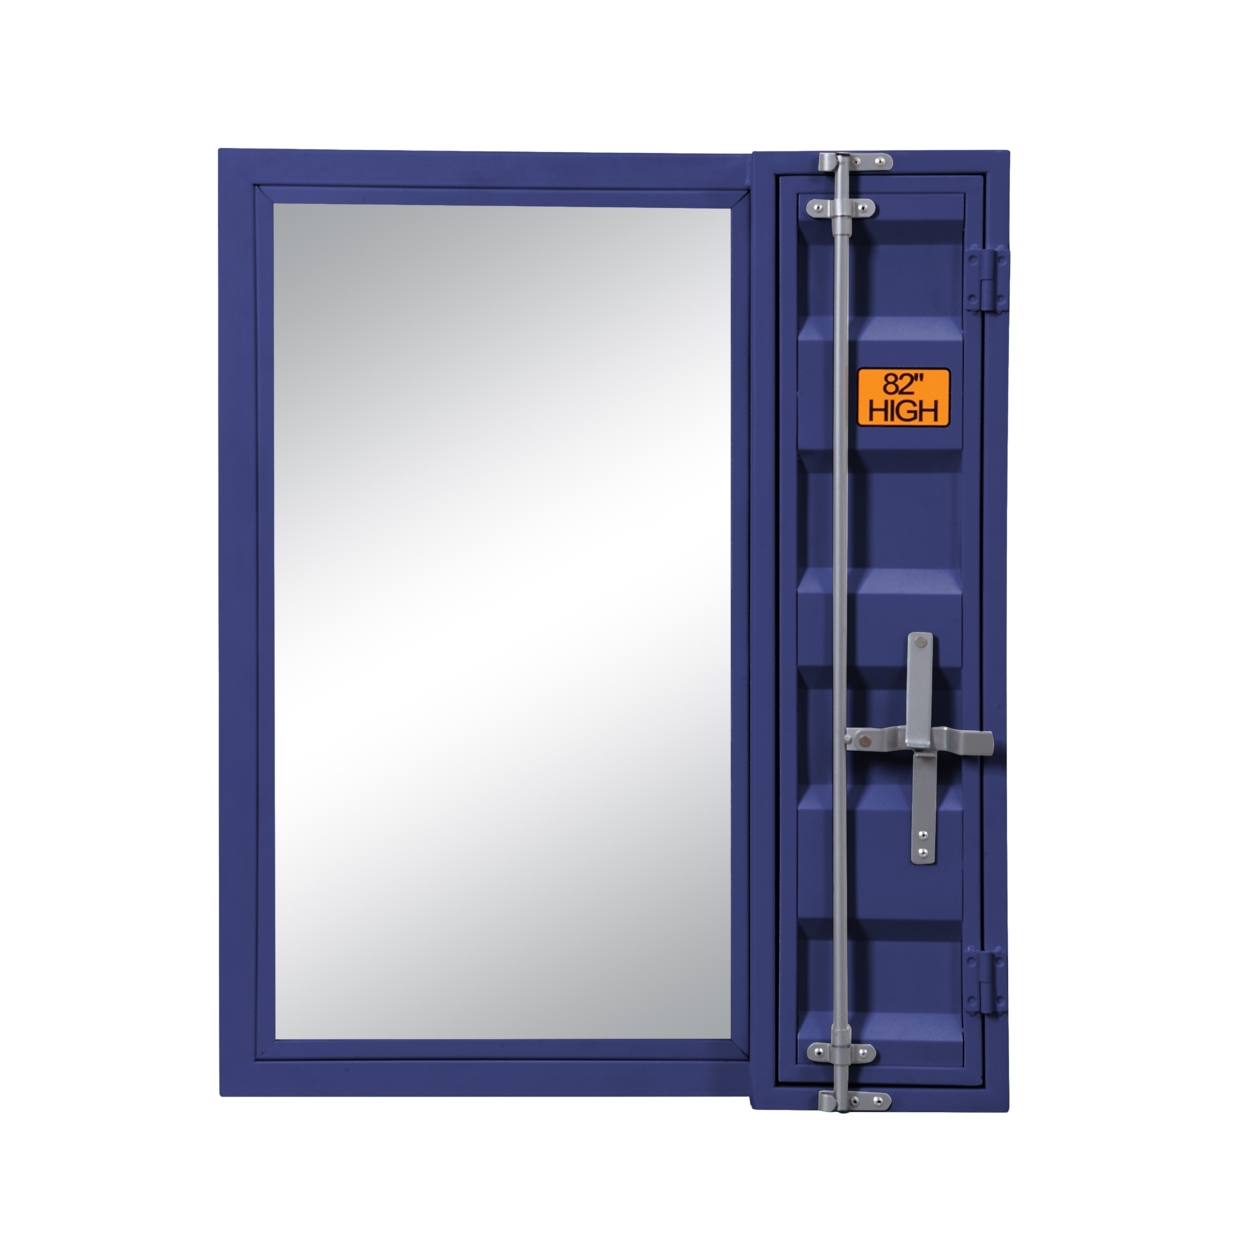 Industrial Style Metal Vanity Mirror With Recessed Door Front, Blue- Saltoro Sherpi